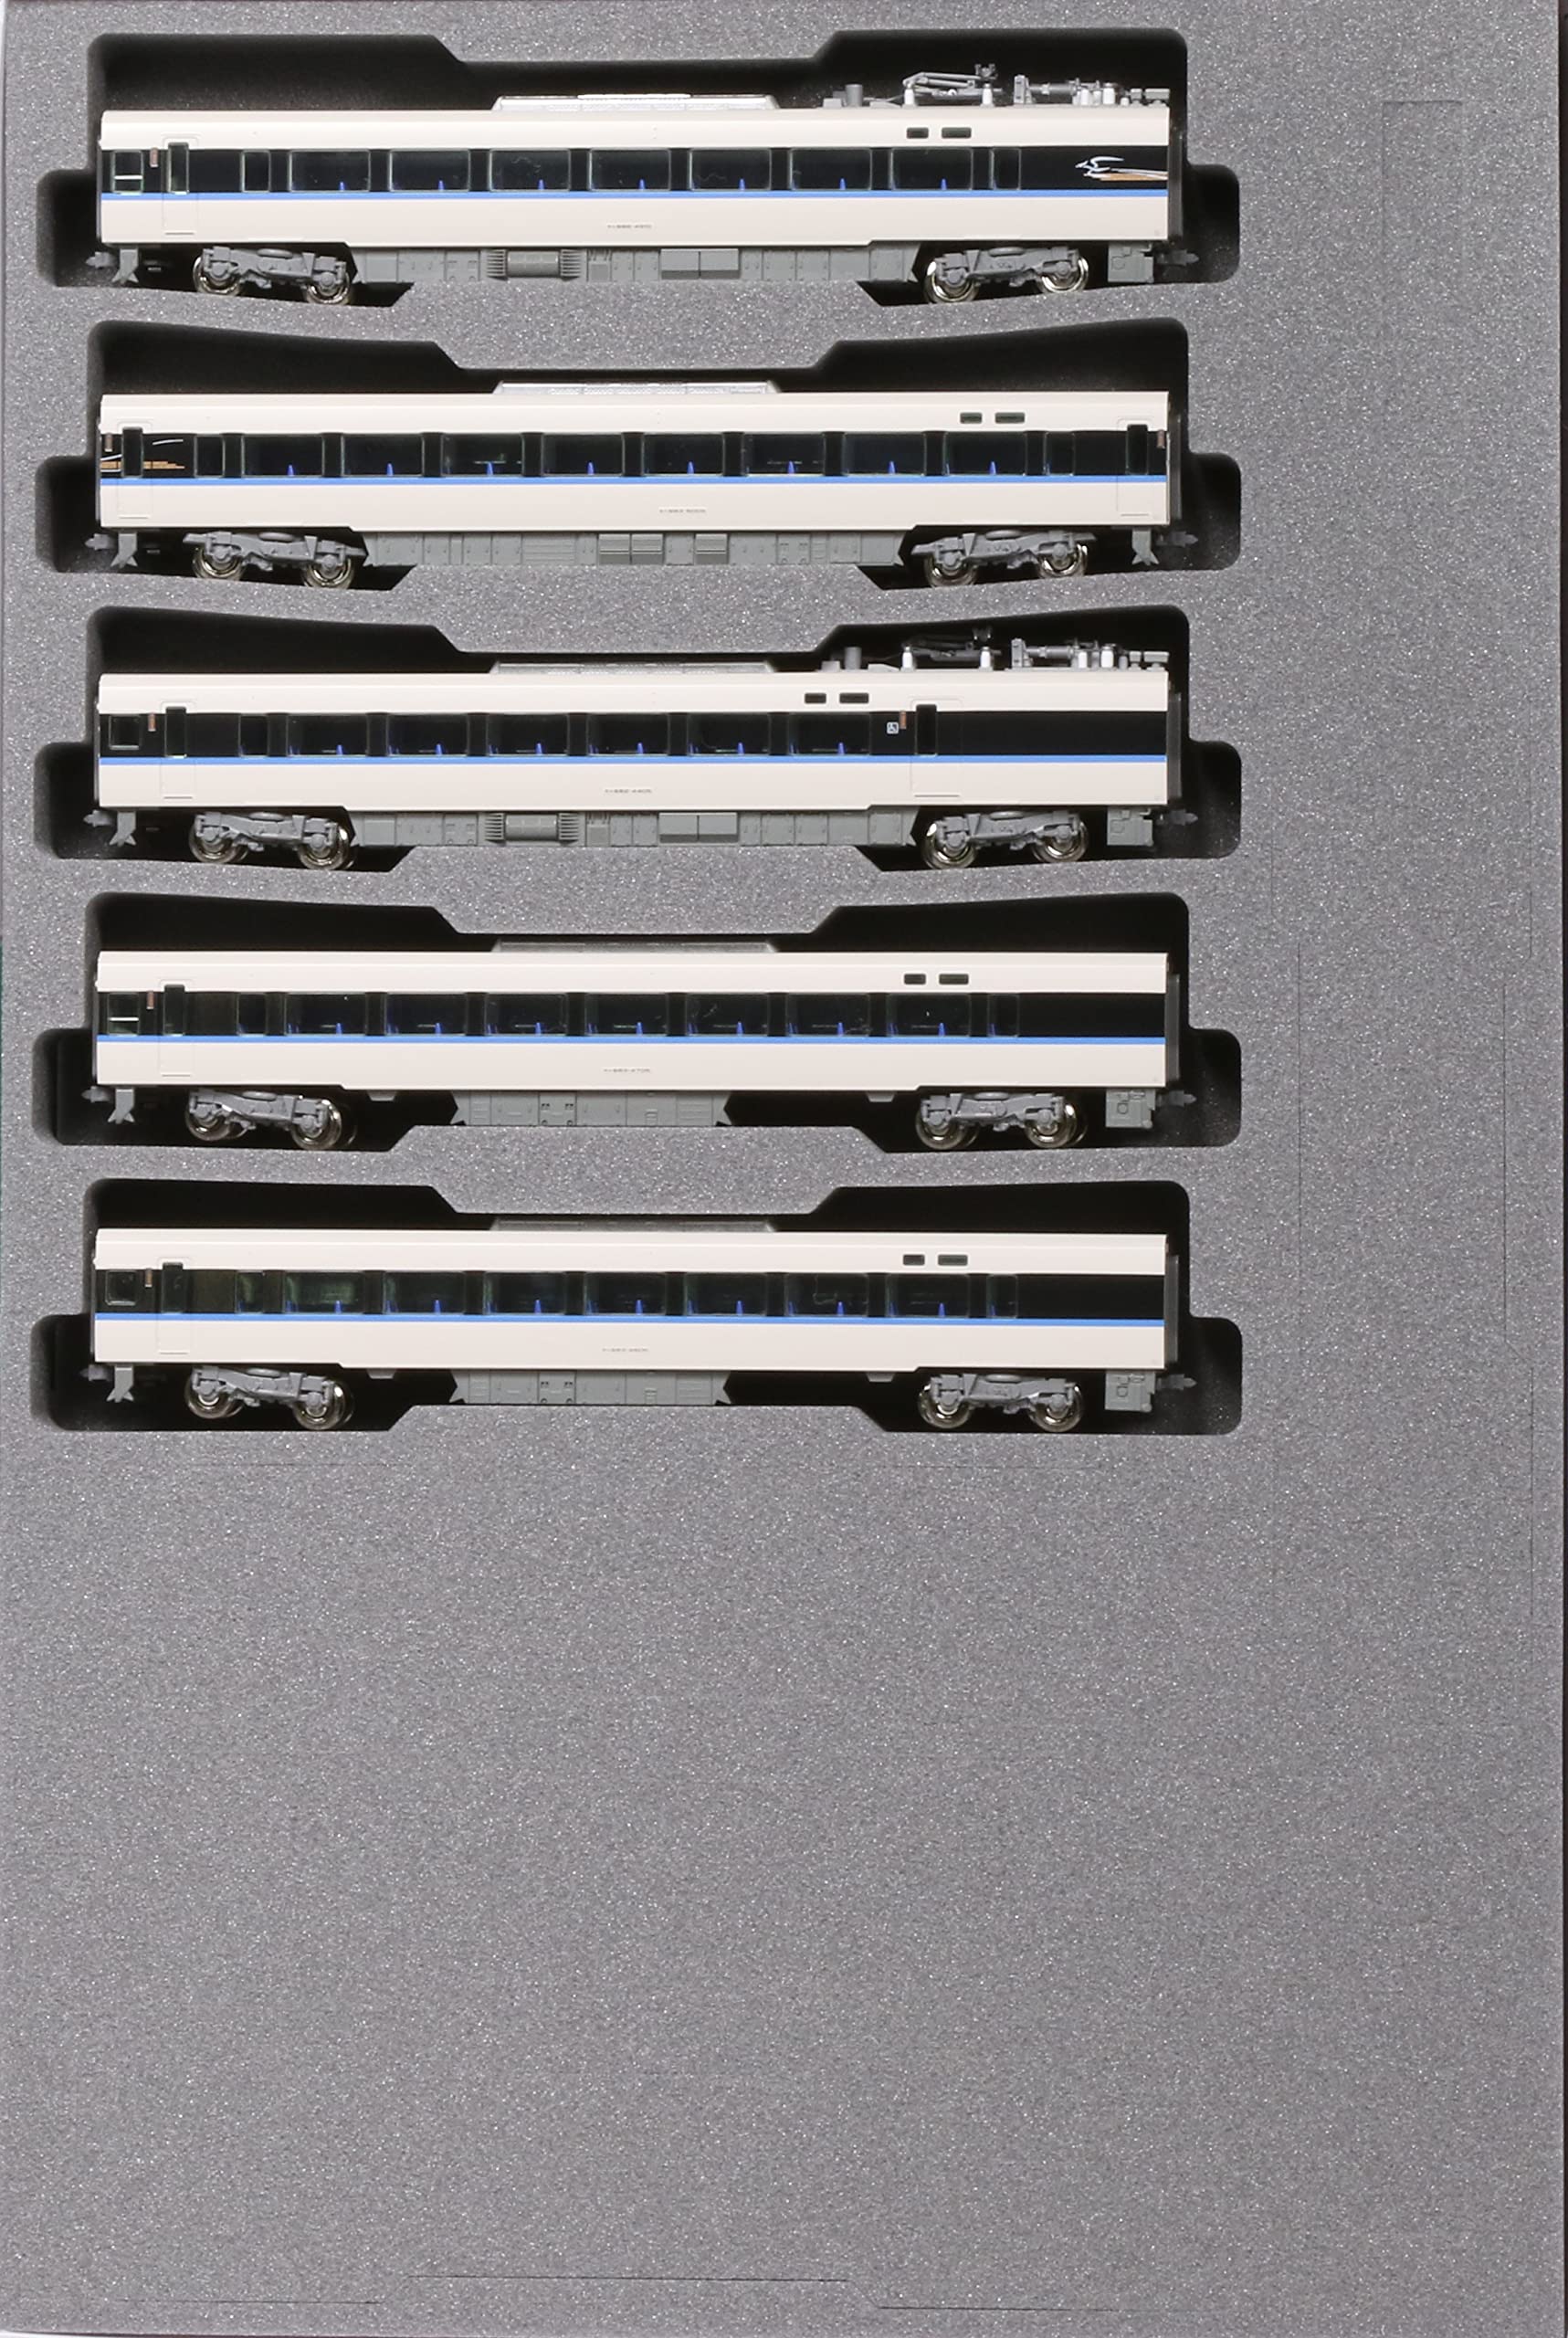 KATO Nゲージ 683系4000番台 サンダーバード リニューアル車 増結セット 5両 10-1746 鉄道模型 電車 白